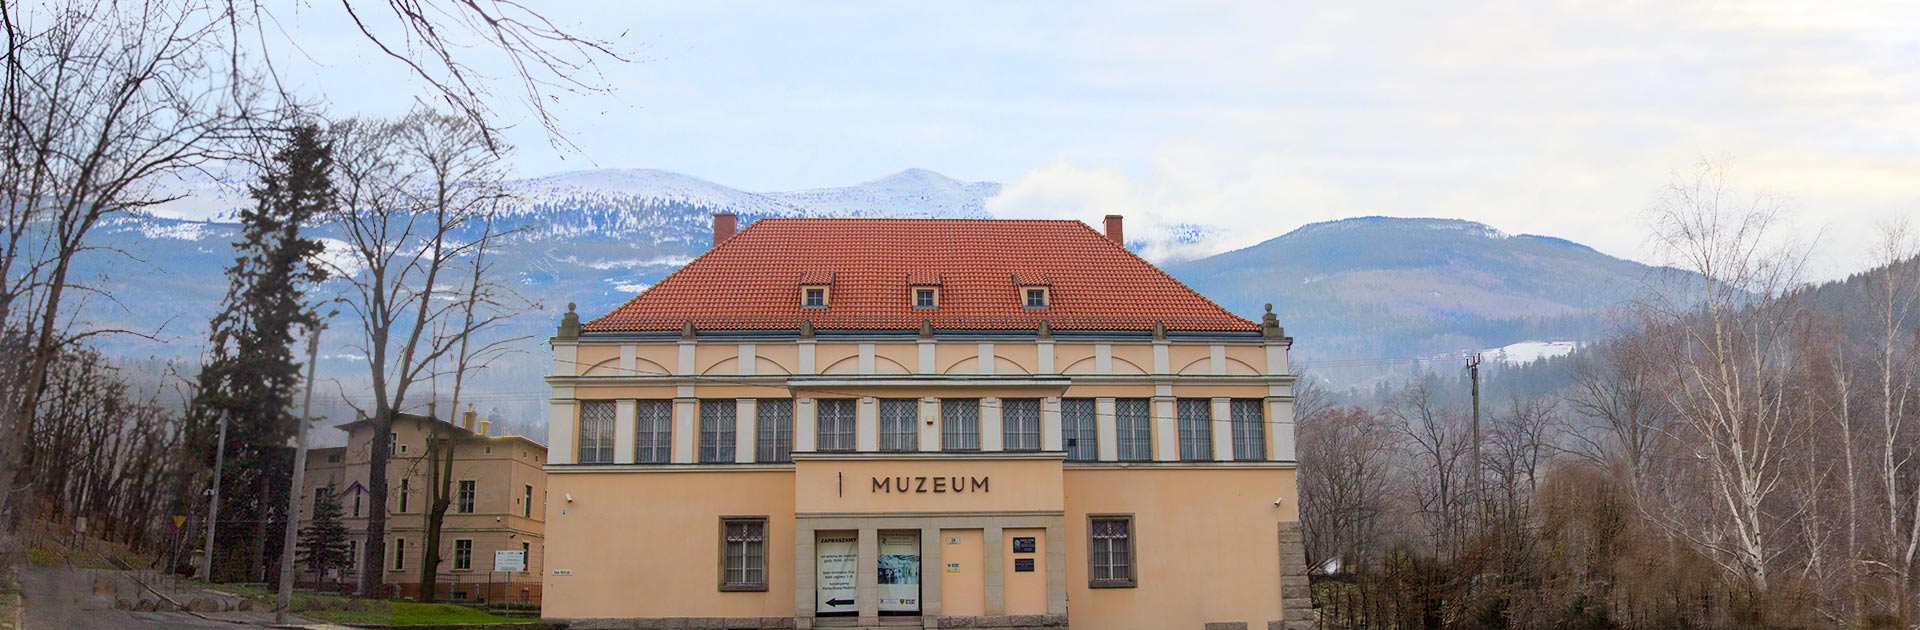 Zdjęcie panoramiczne przedstawiające muzeum karkonoskie w Jeleniej Górze.